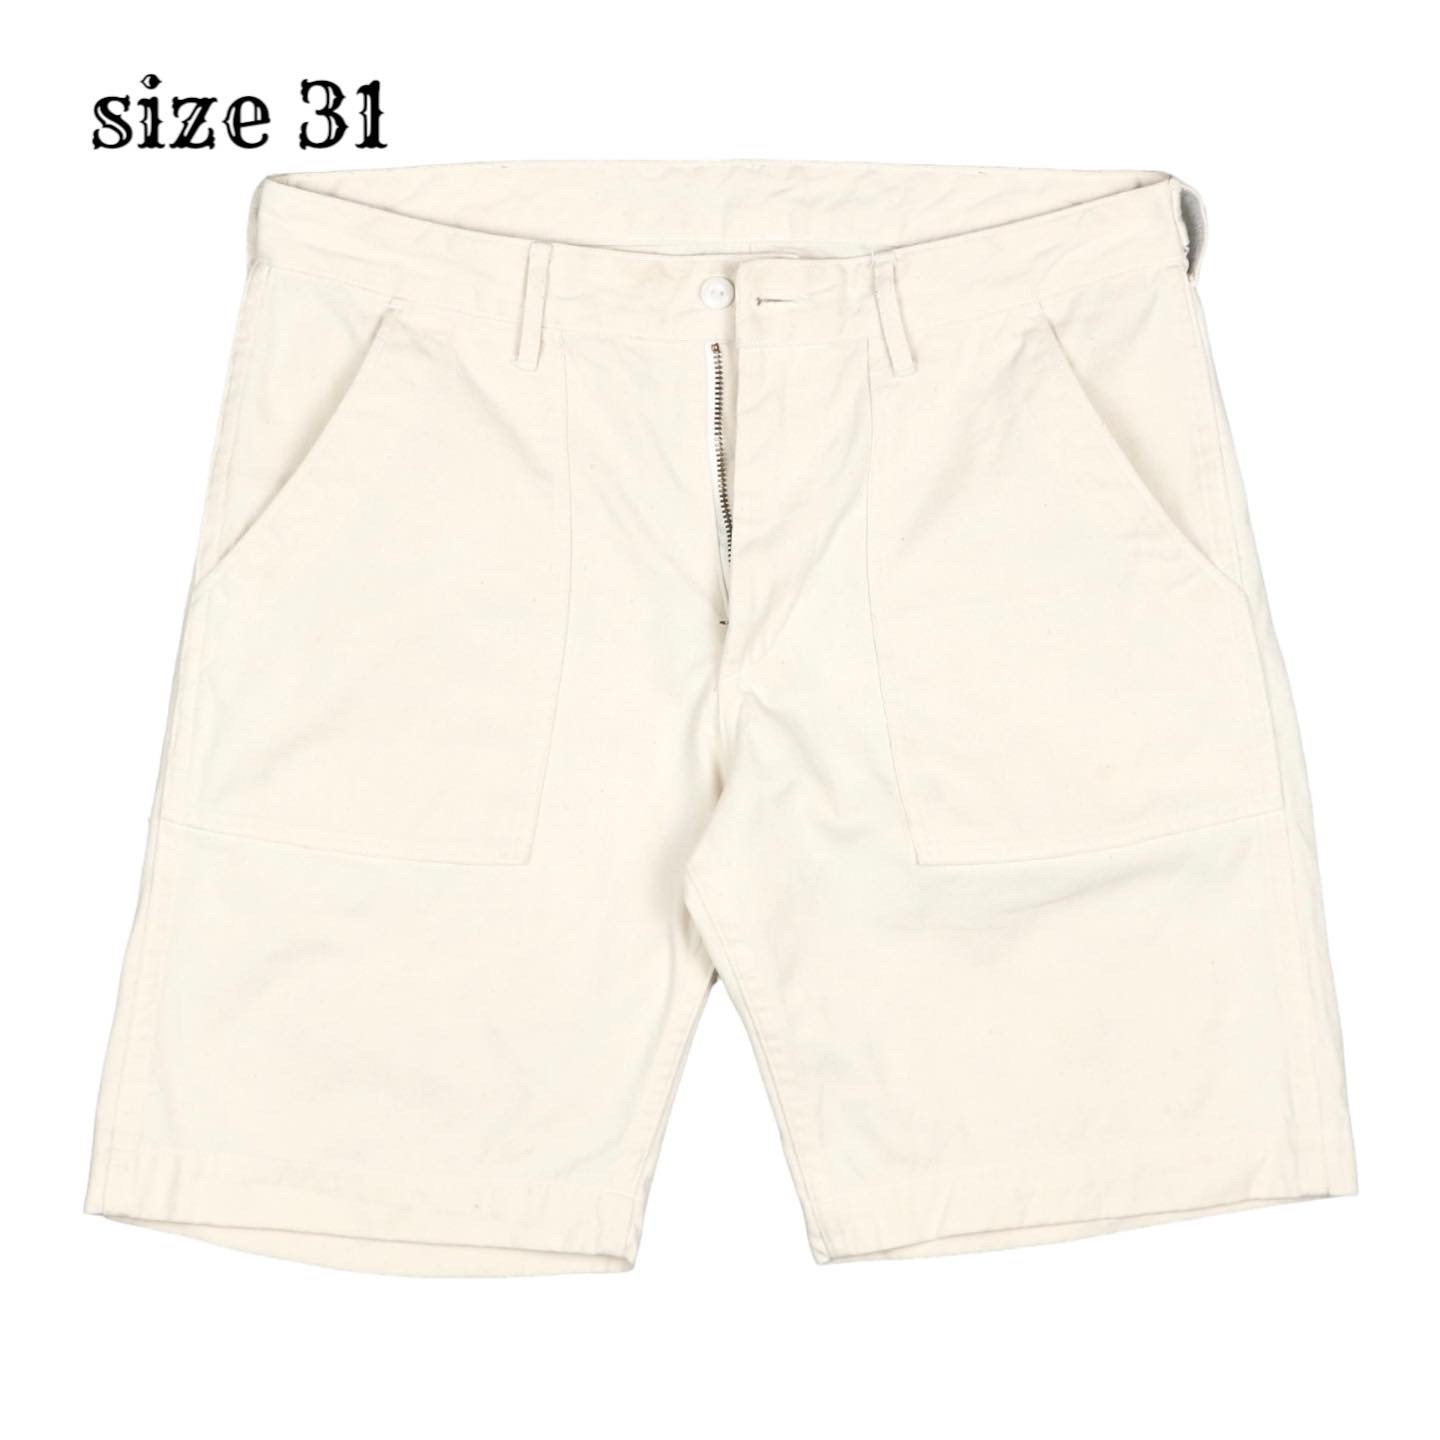 Danton Canvas Shorts Size 31